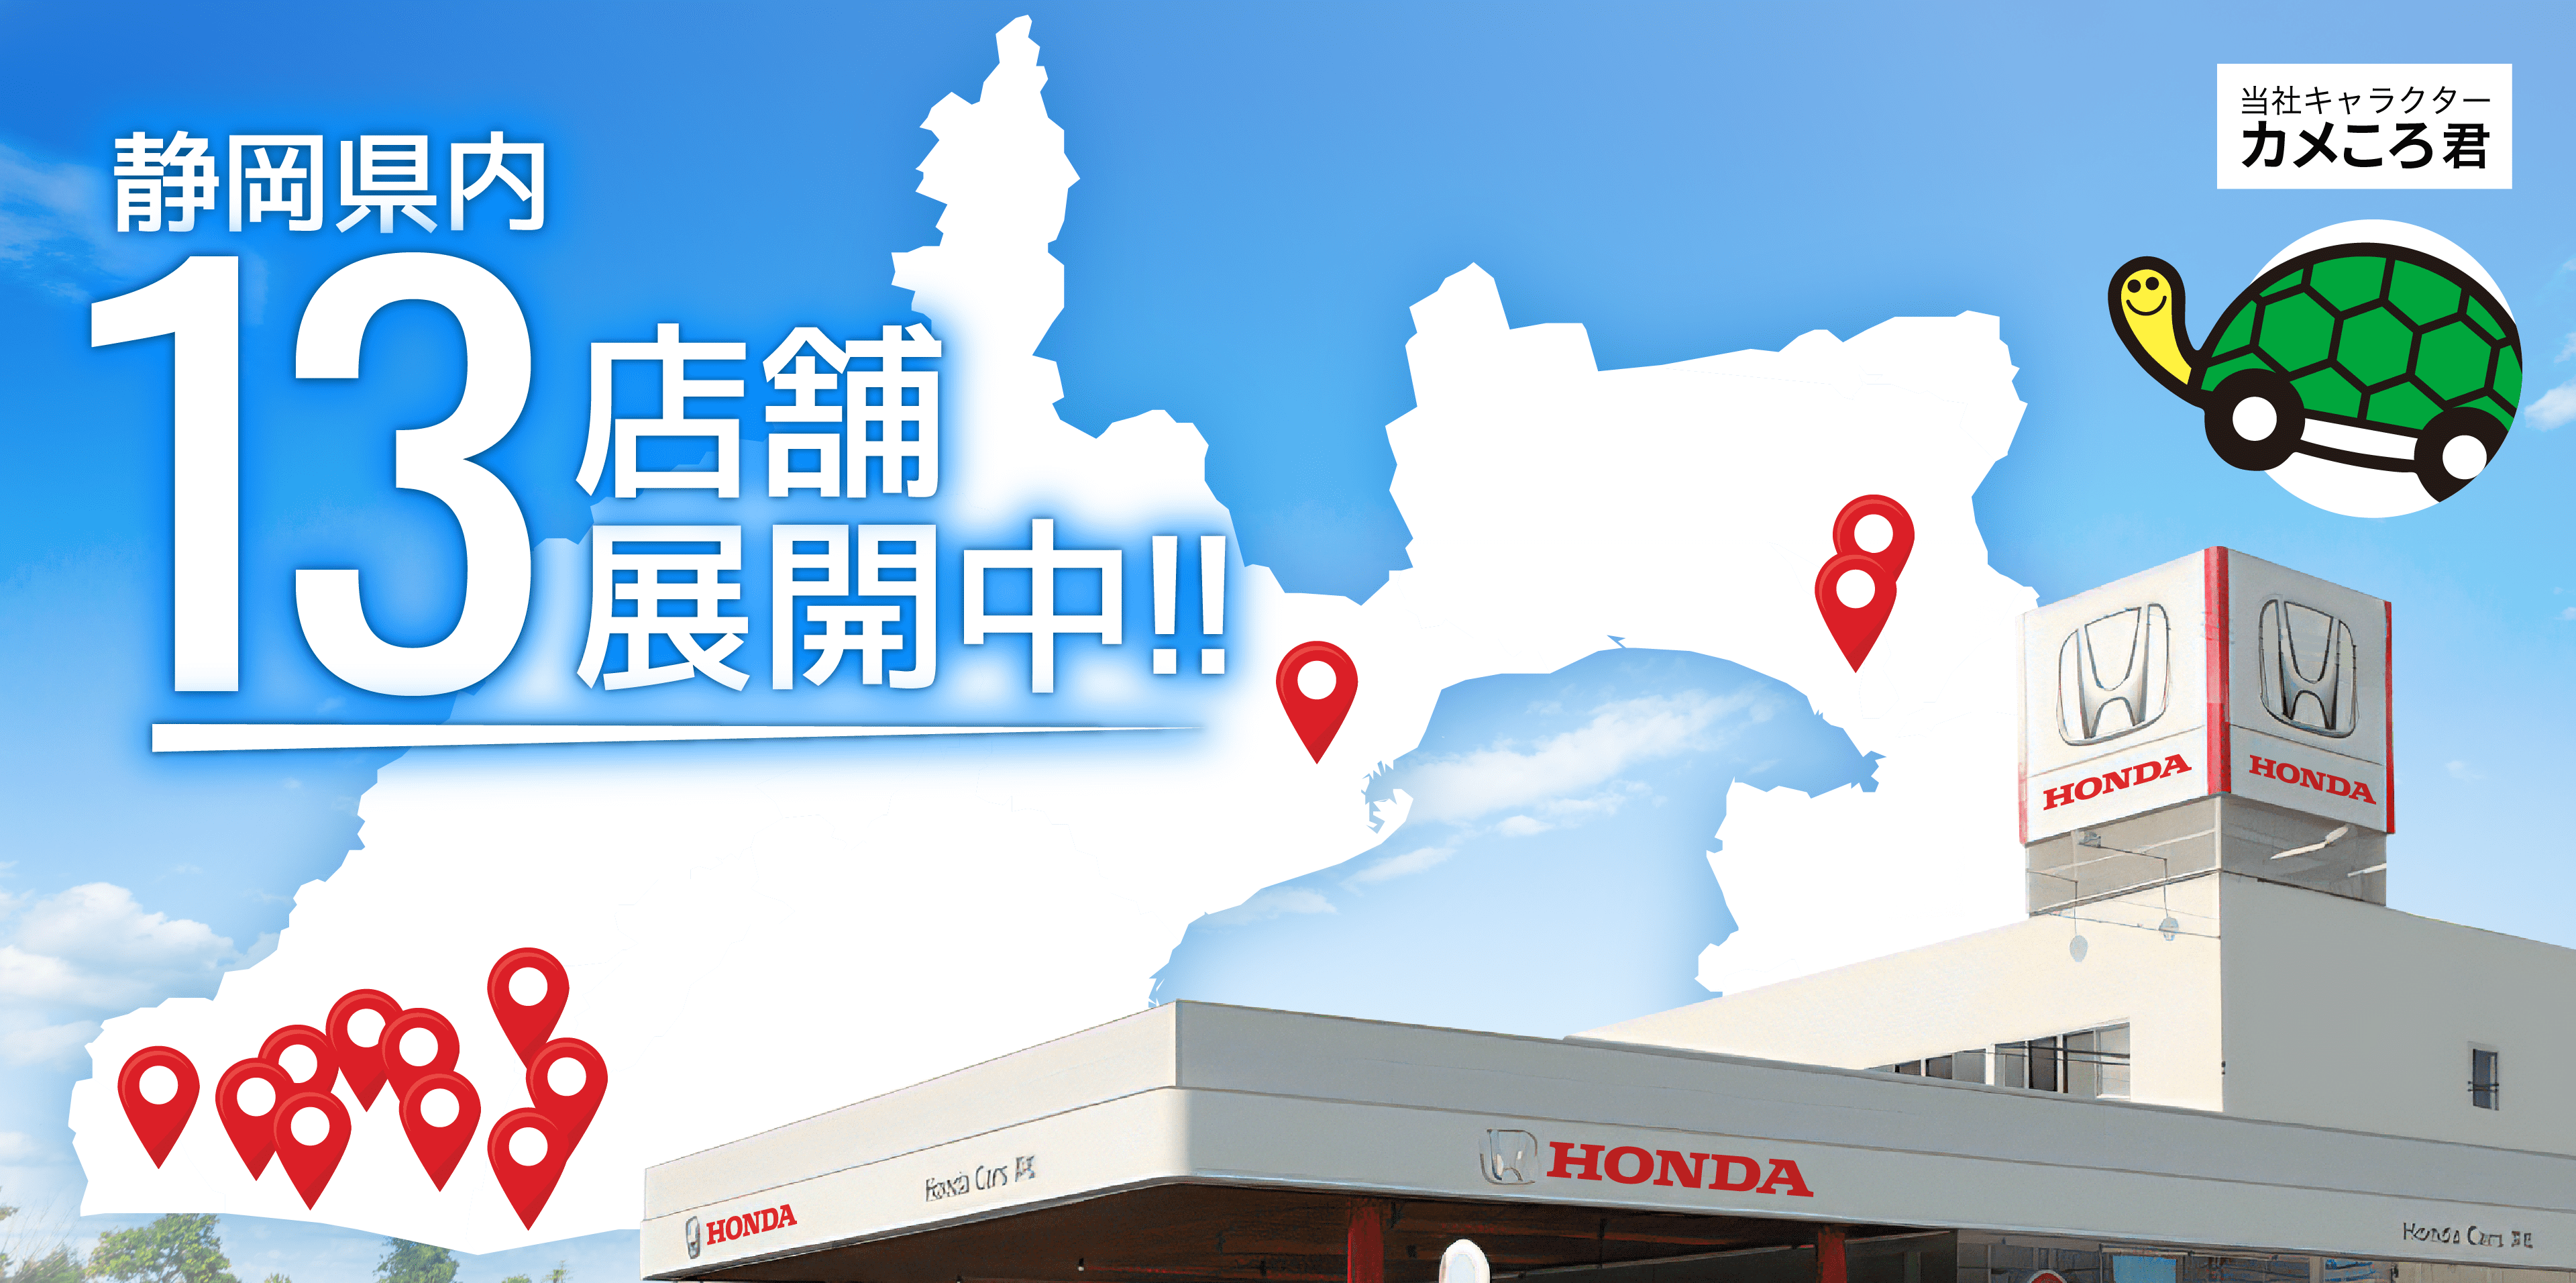 Honda Cars 浜松はおかげさまで70周年。